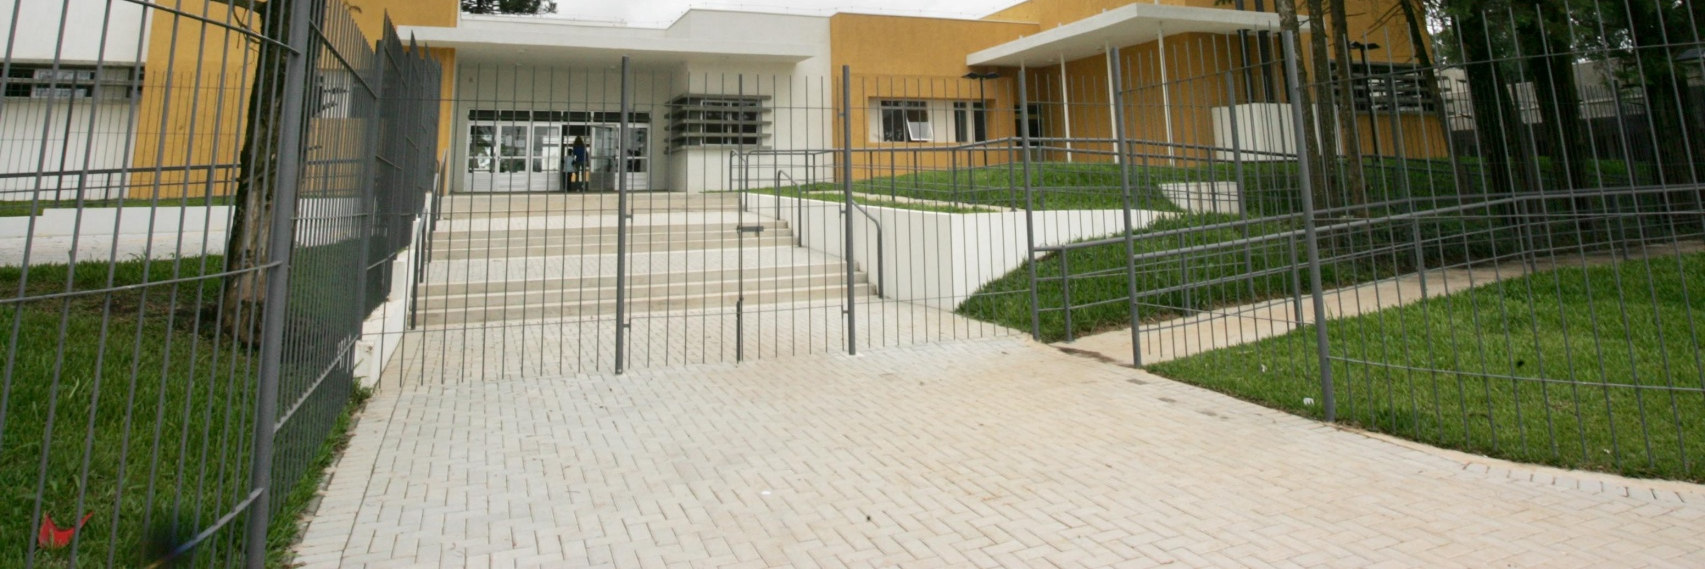 Escola Municipal Escola Municipal Profª